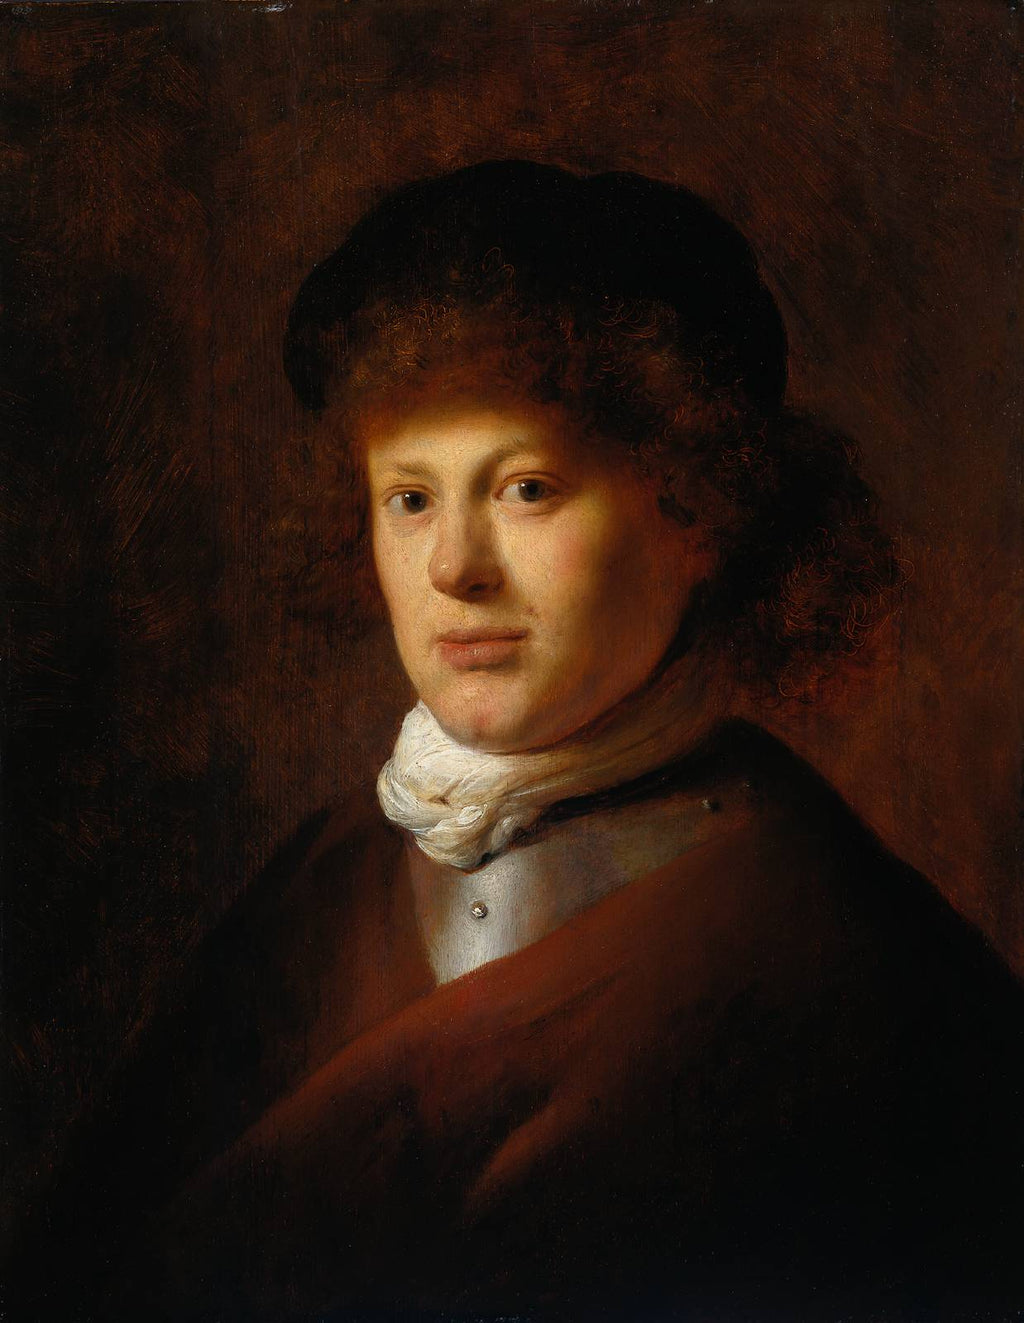 Retrato de Rembrandt van Rijn